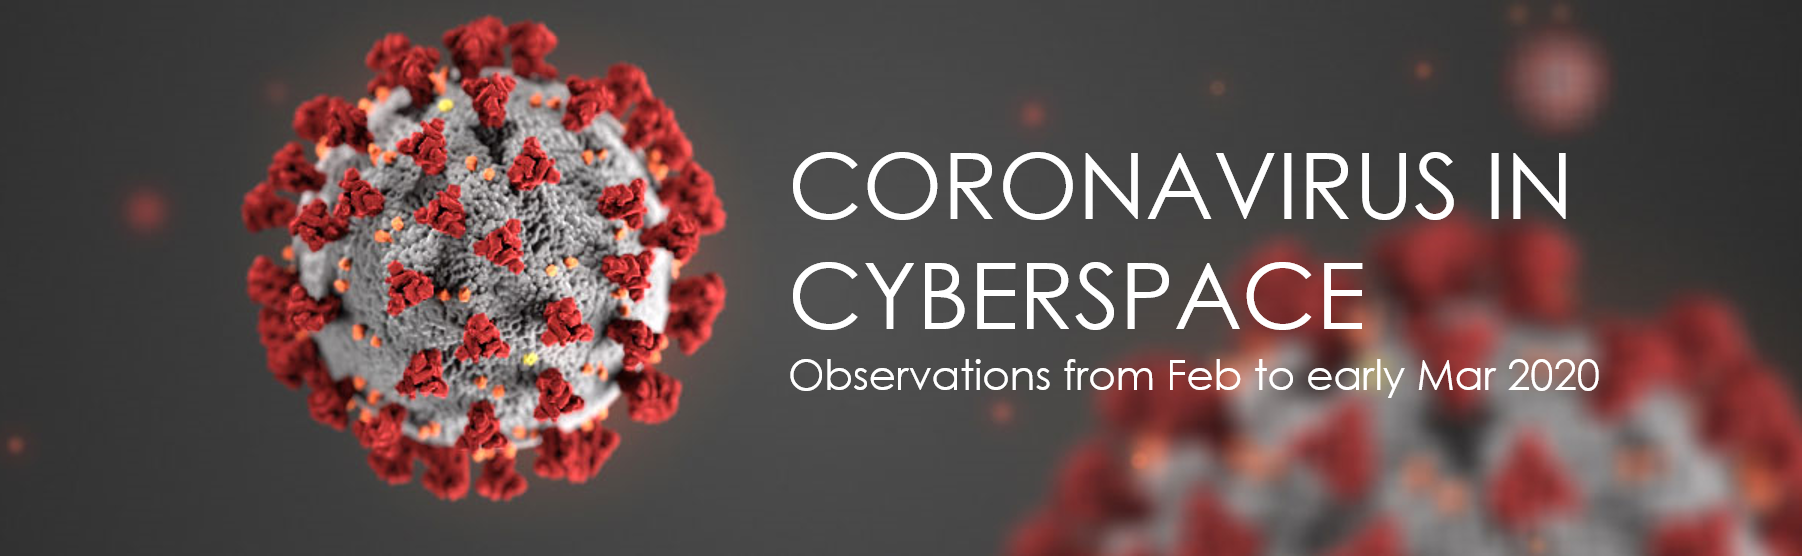 Coronavirus in Cyberspace